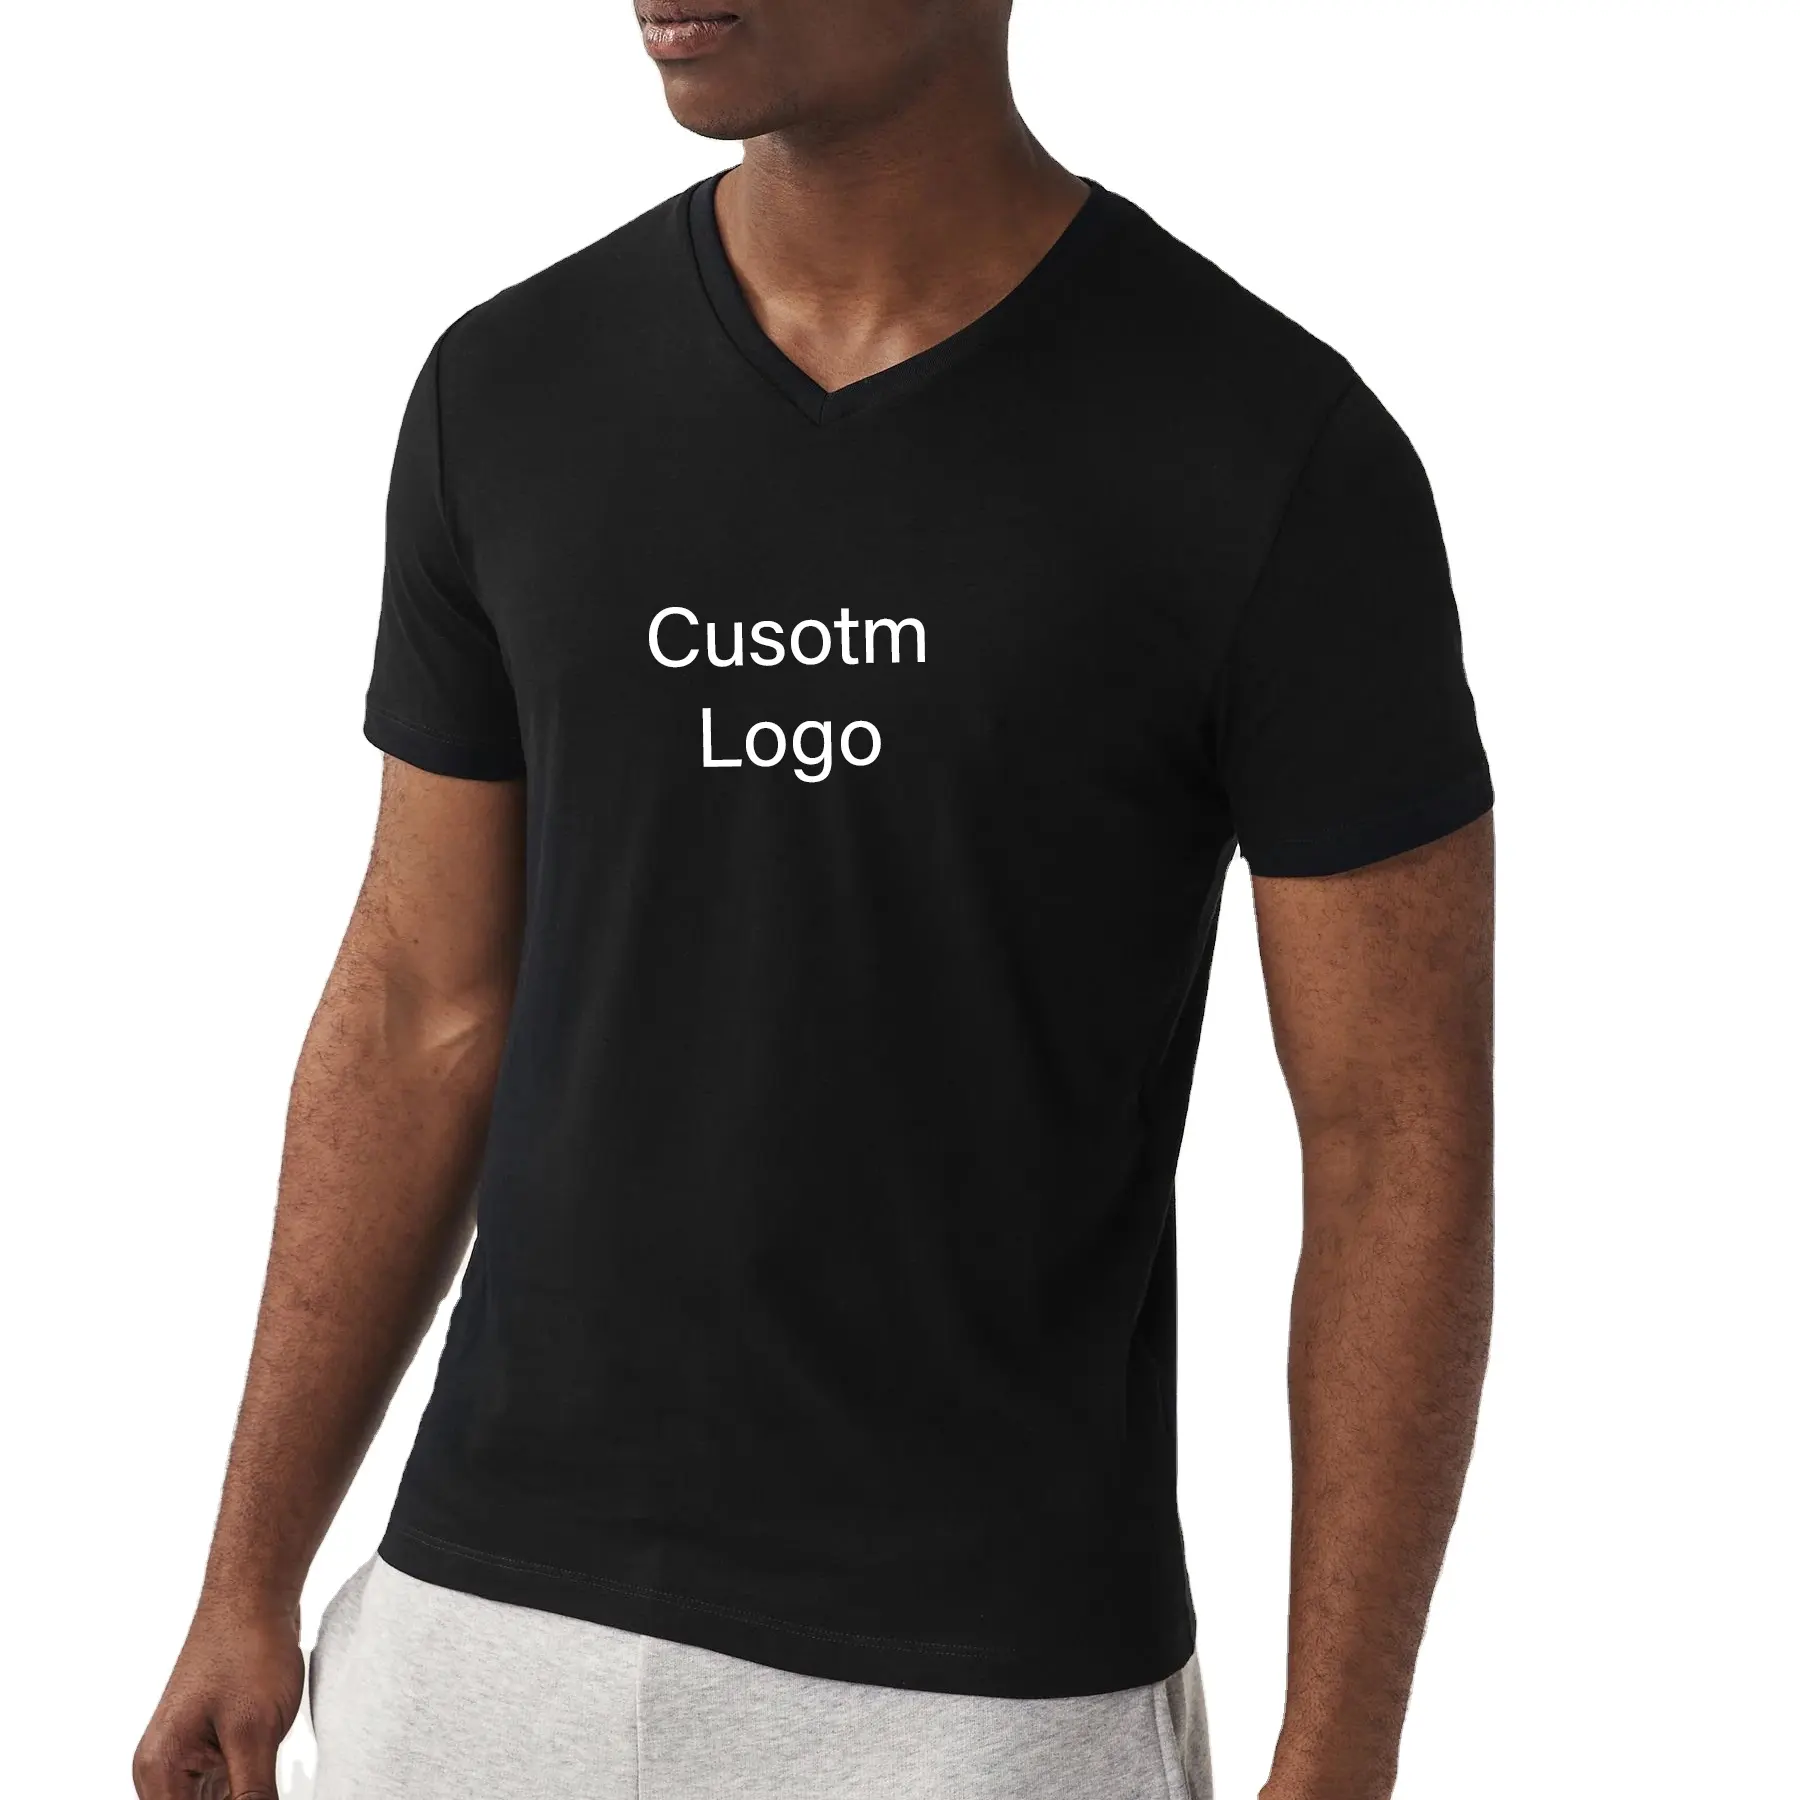 Heren T-Shirt Van Hoge Kwaliteit Vocht Wicking Shirt Voor Mannen Snel Droog Met Korte Mouwen, Normale Pasvorm Op Maat T-Shirts Cool Droge Shirts